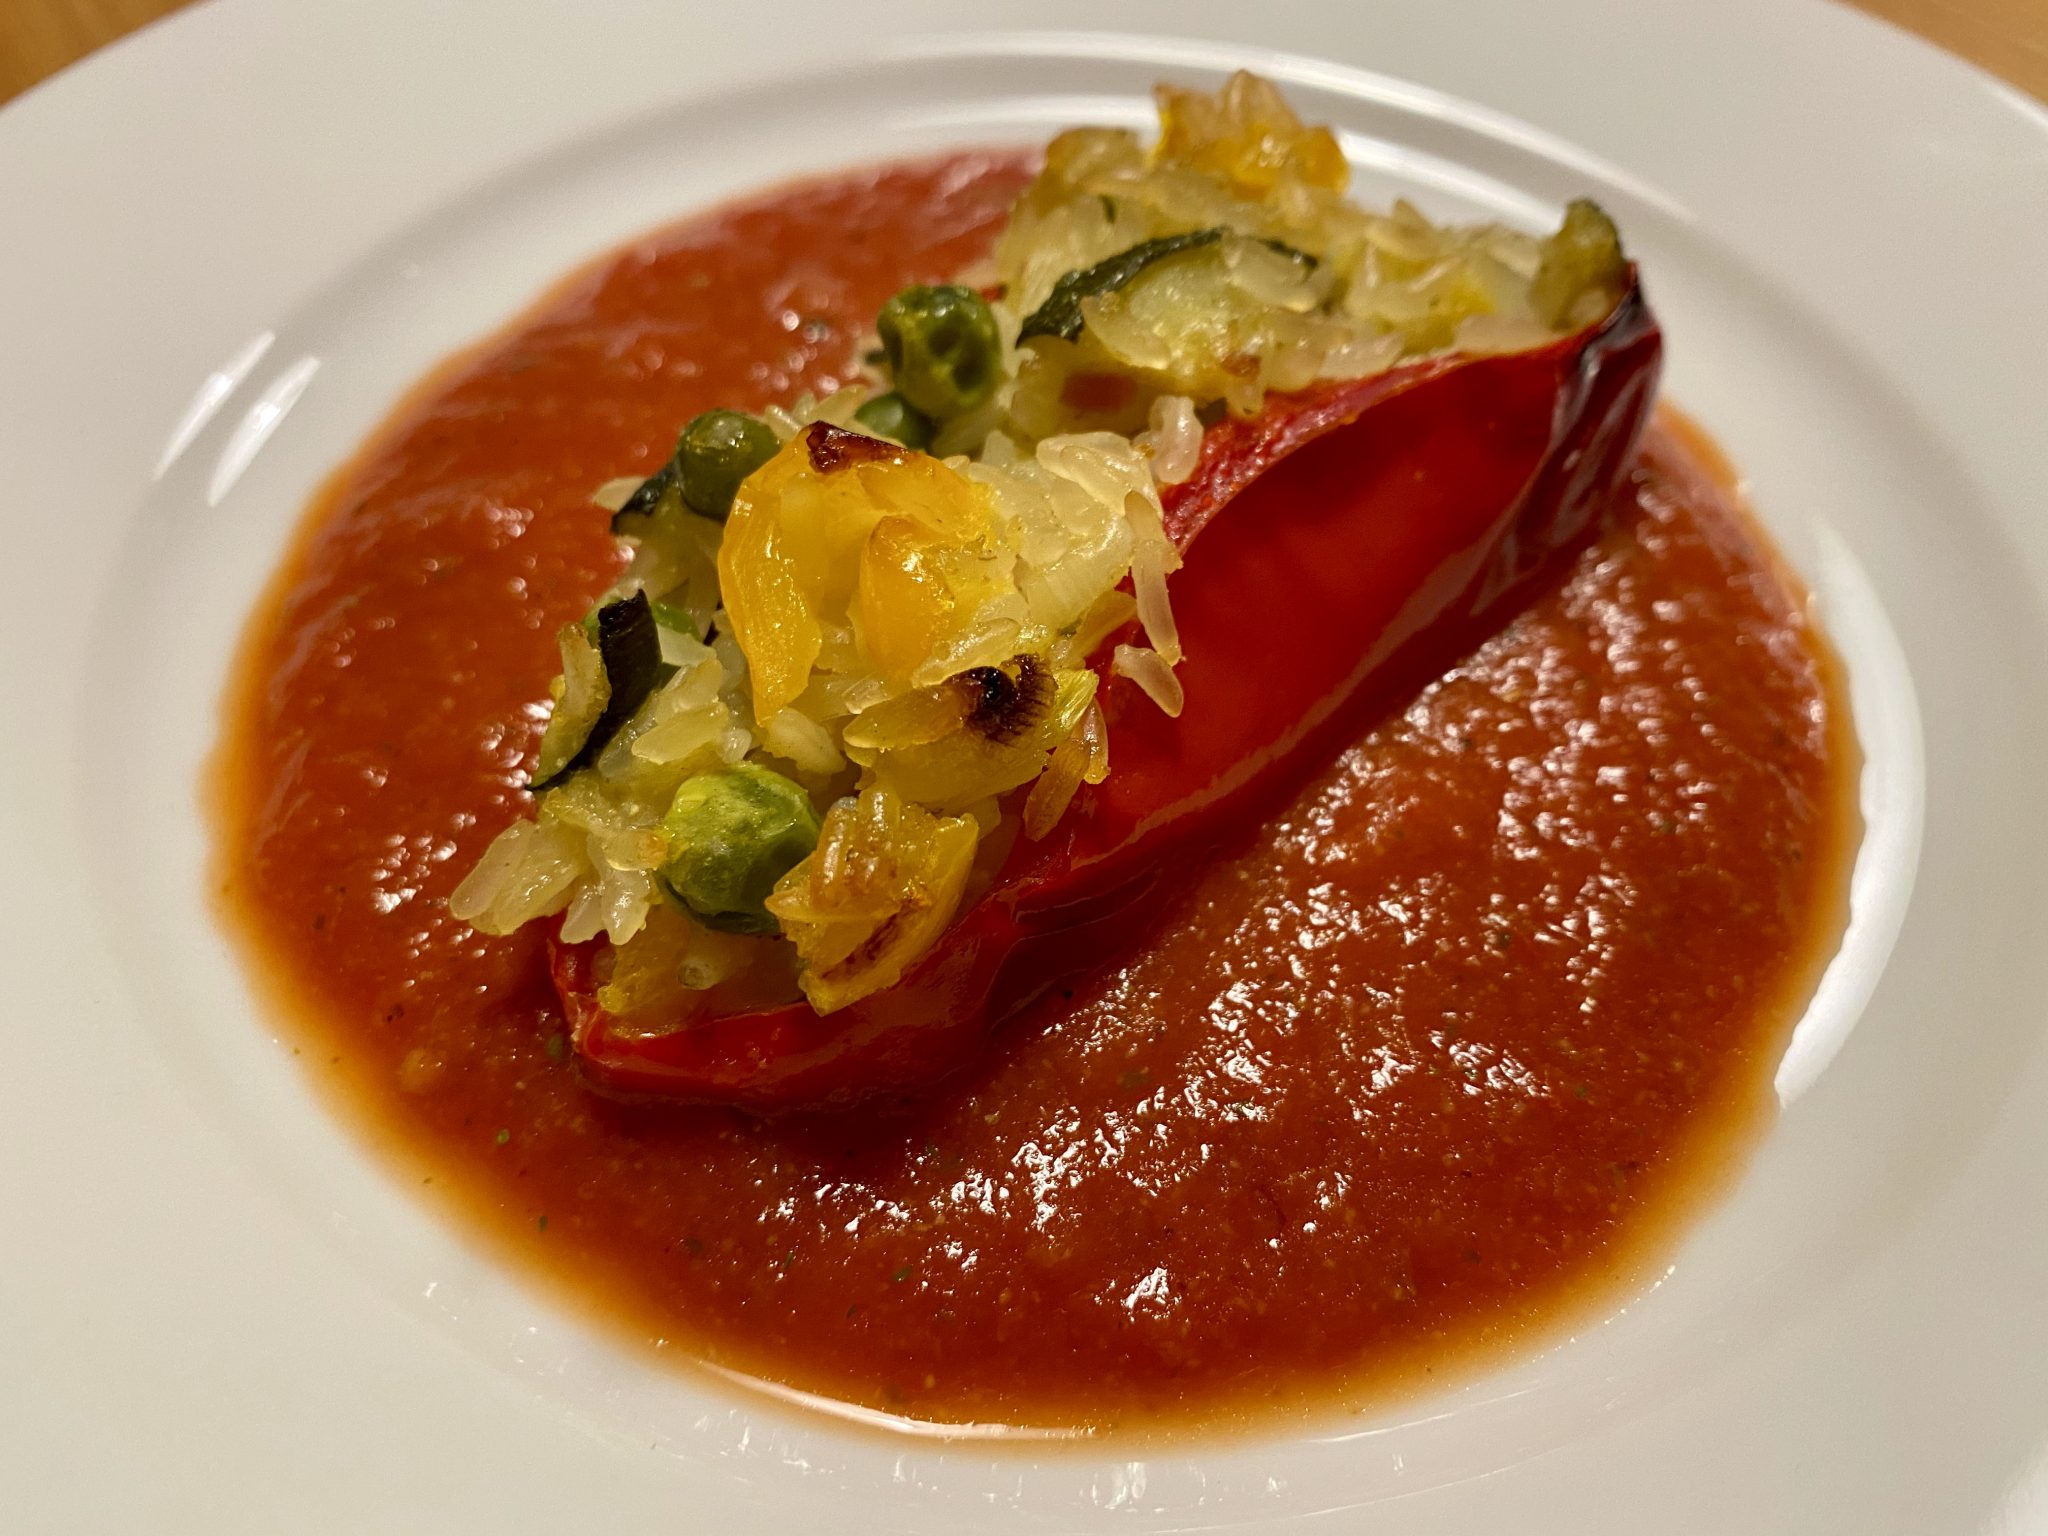 Fleischlos gefüllte Paprika mit Tomatensoße - Was essen wir heute